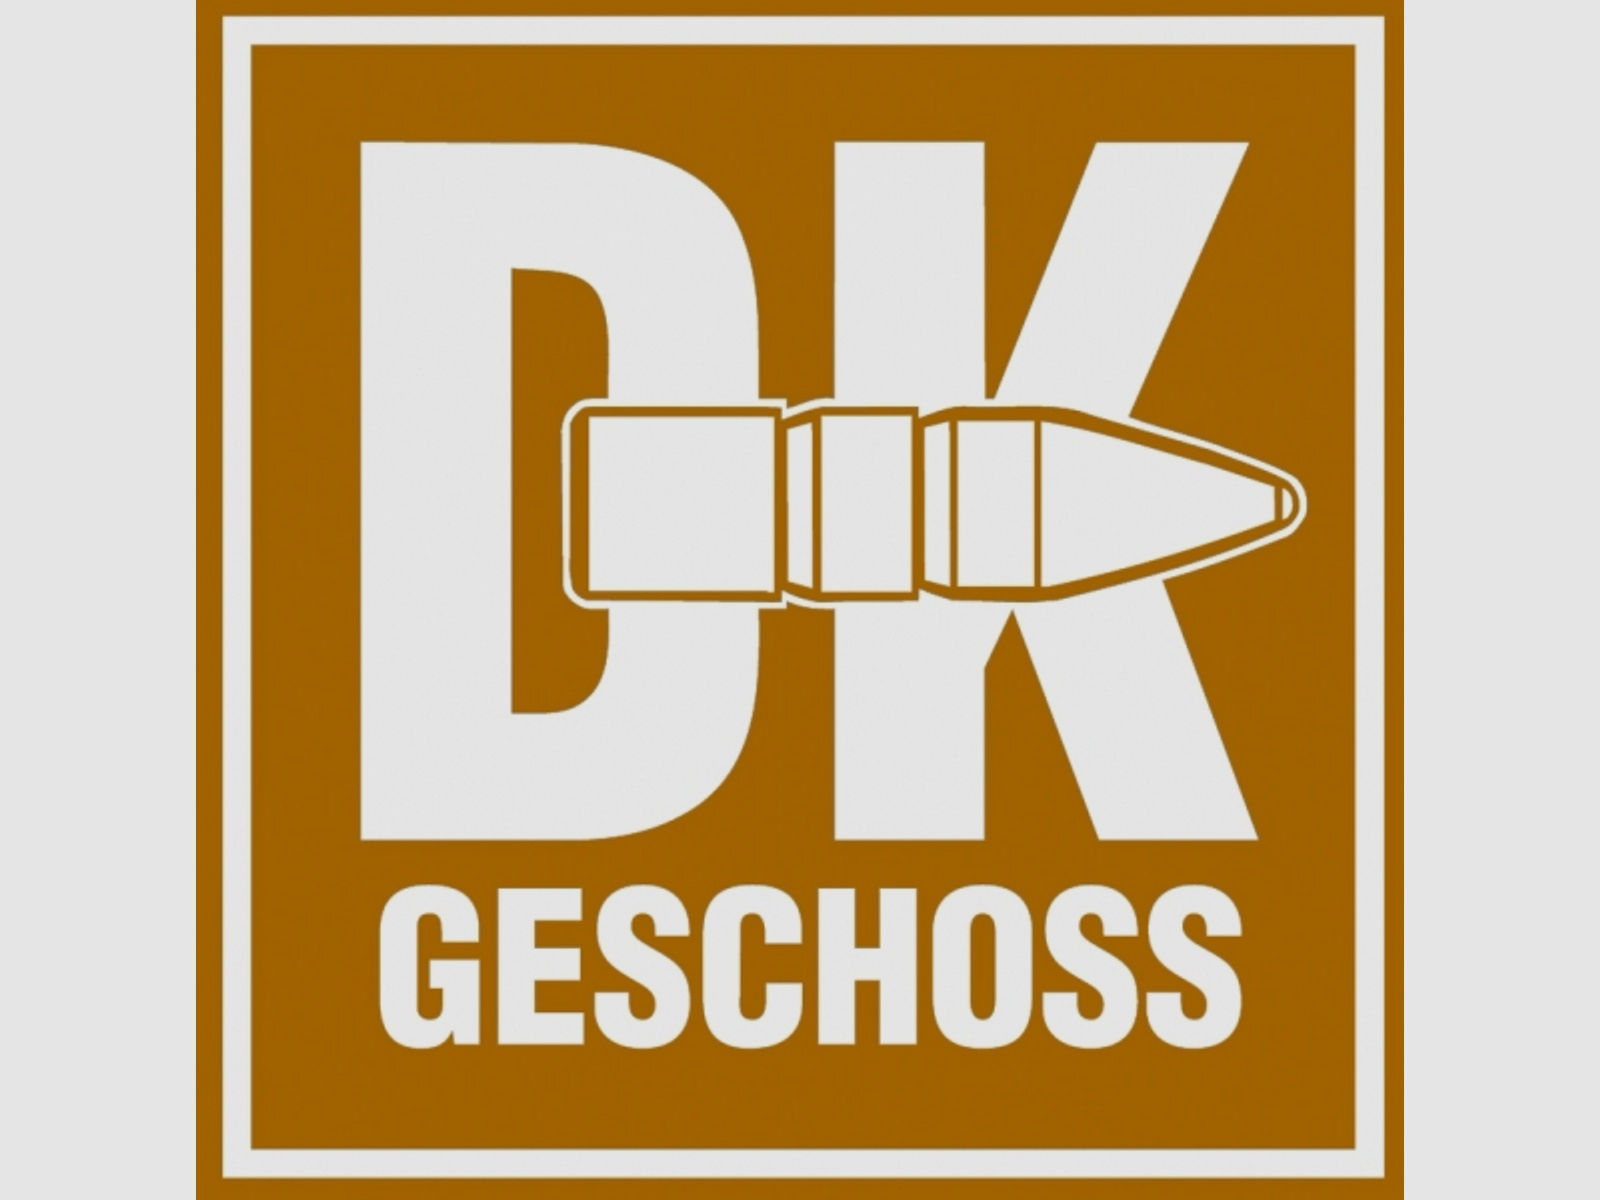 50 Stück NEUE RWS Geschosse - DK (Doppelkern) 6,5mm/.264 - 139gr/9,1g (#2311463) >Teilzerleger/StopP